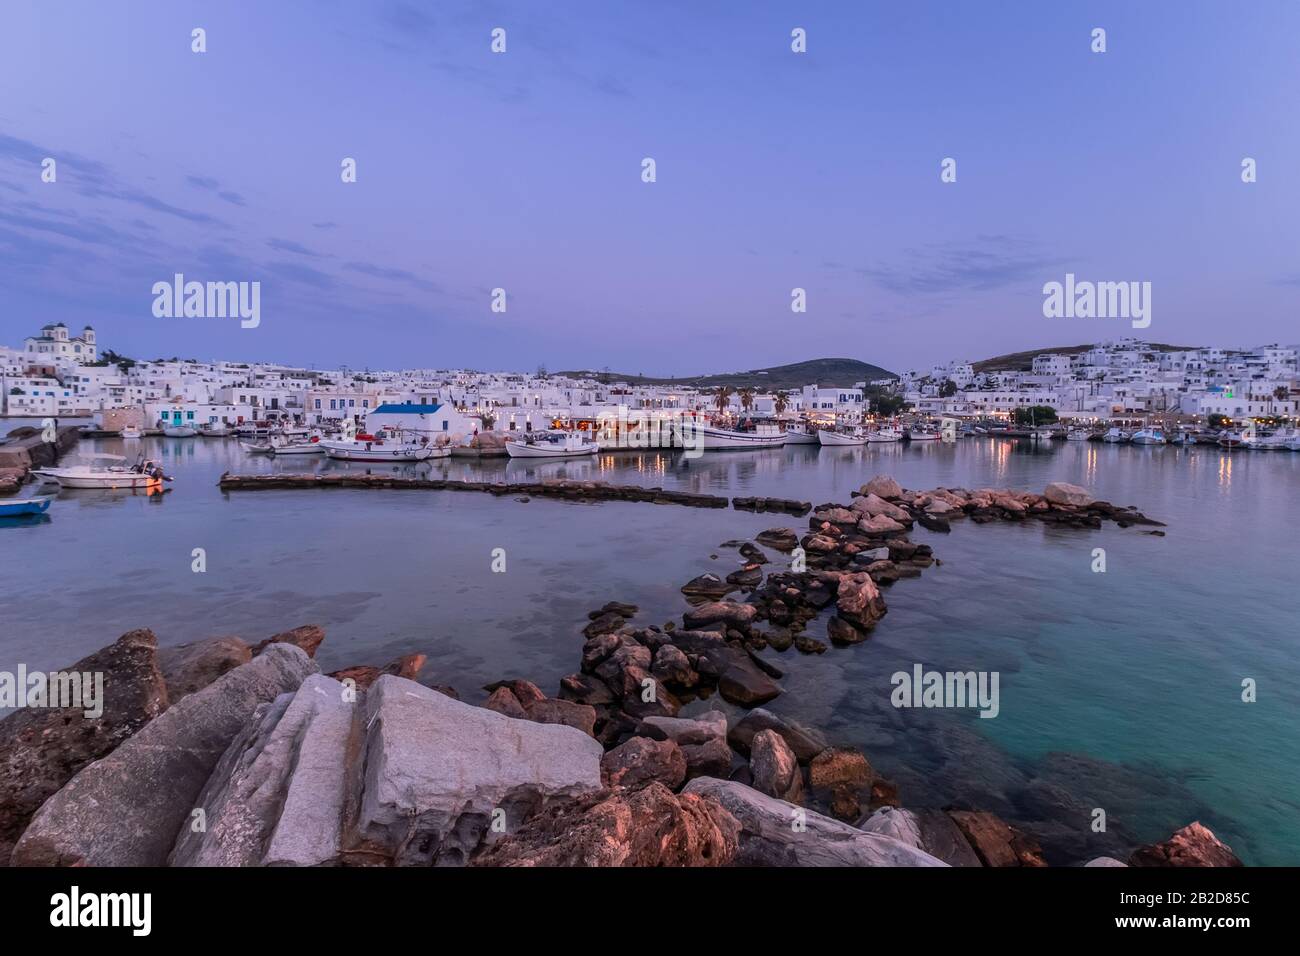 Vista panoramica del tramonto presso la famosa attrazione turistica dell'isola di Paros, la città di Naousa. Zona passeggiata con bar e ristoranti lungo il porto. Mar Egeo Foto Stock